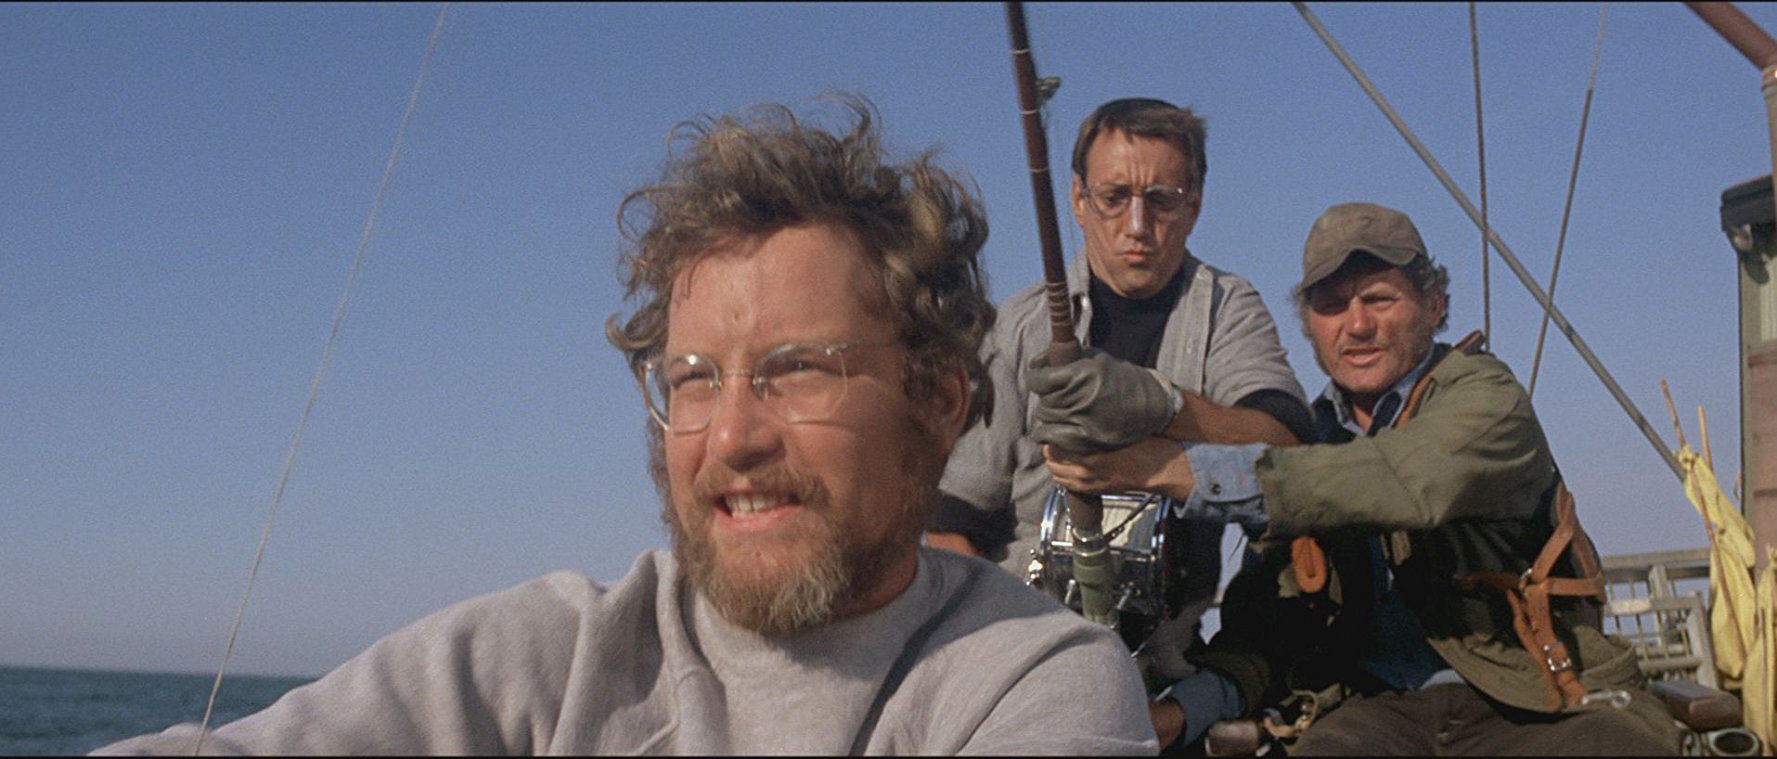 Richard Dreyfuss, Roy Scheider, and Robert Shaw in Jaws.